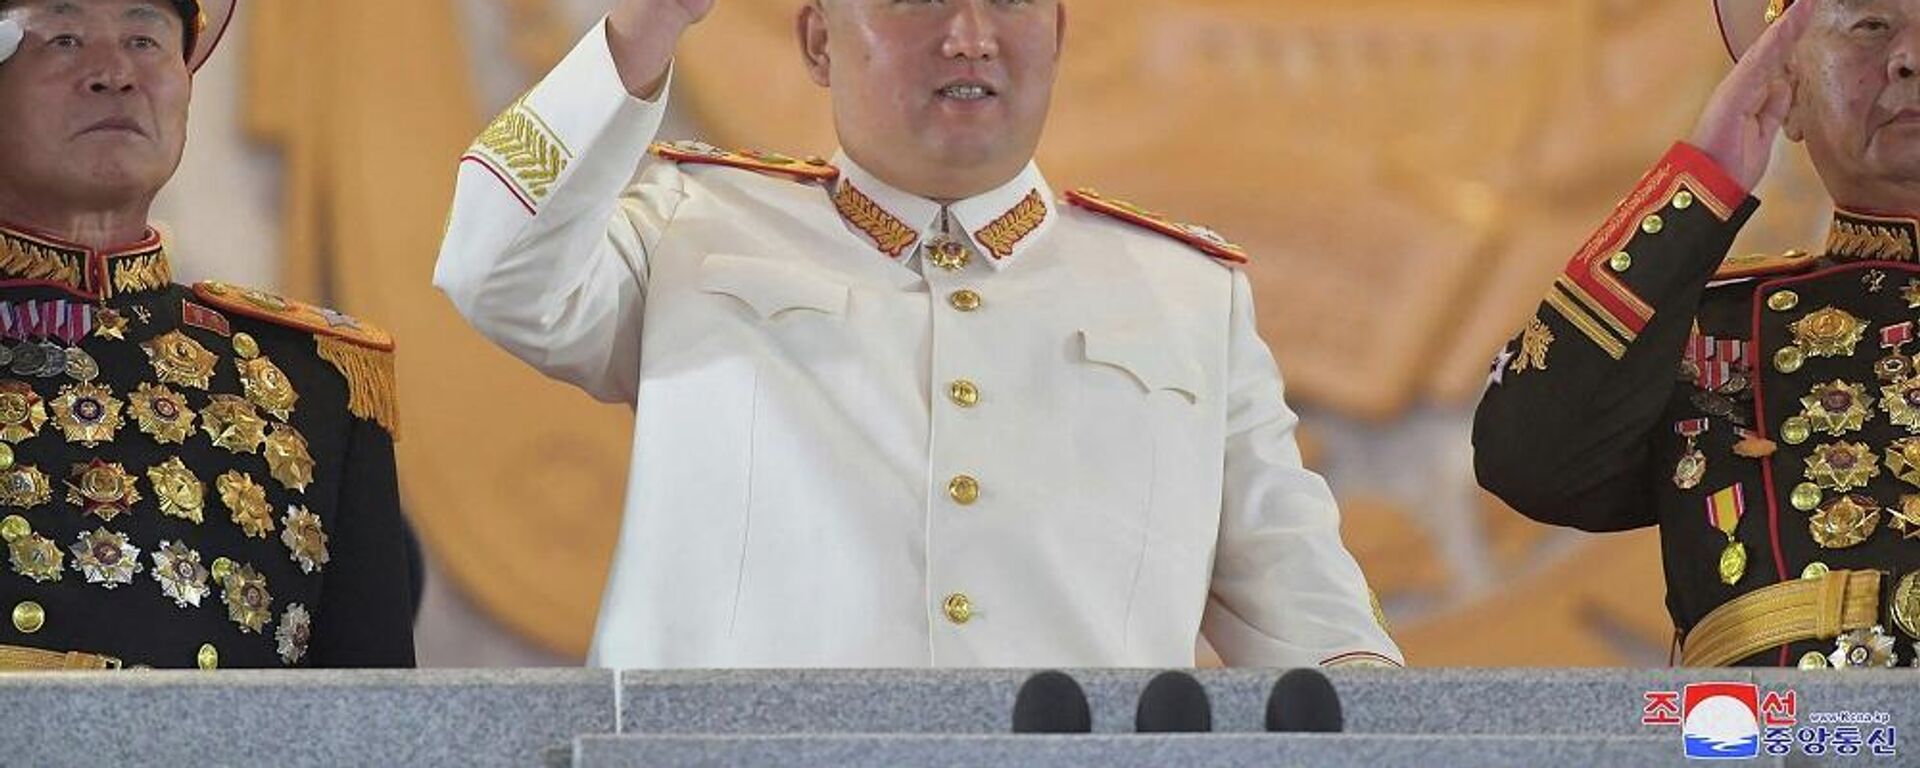 زعيم كوريا الشمالية، كيم جونغ أون، يشارك في عرض عسكري كبير أقيم في ساحة كيم إيل سونغ في بيونغ يانغ، 26 نيسان/ أبريل 2022 - سبوتنيك عربي, 1920, 30.04.2022